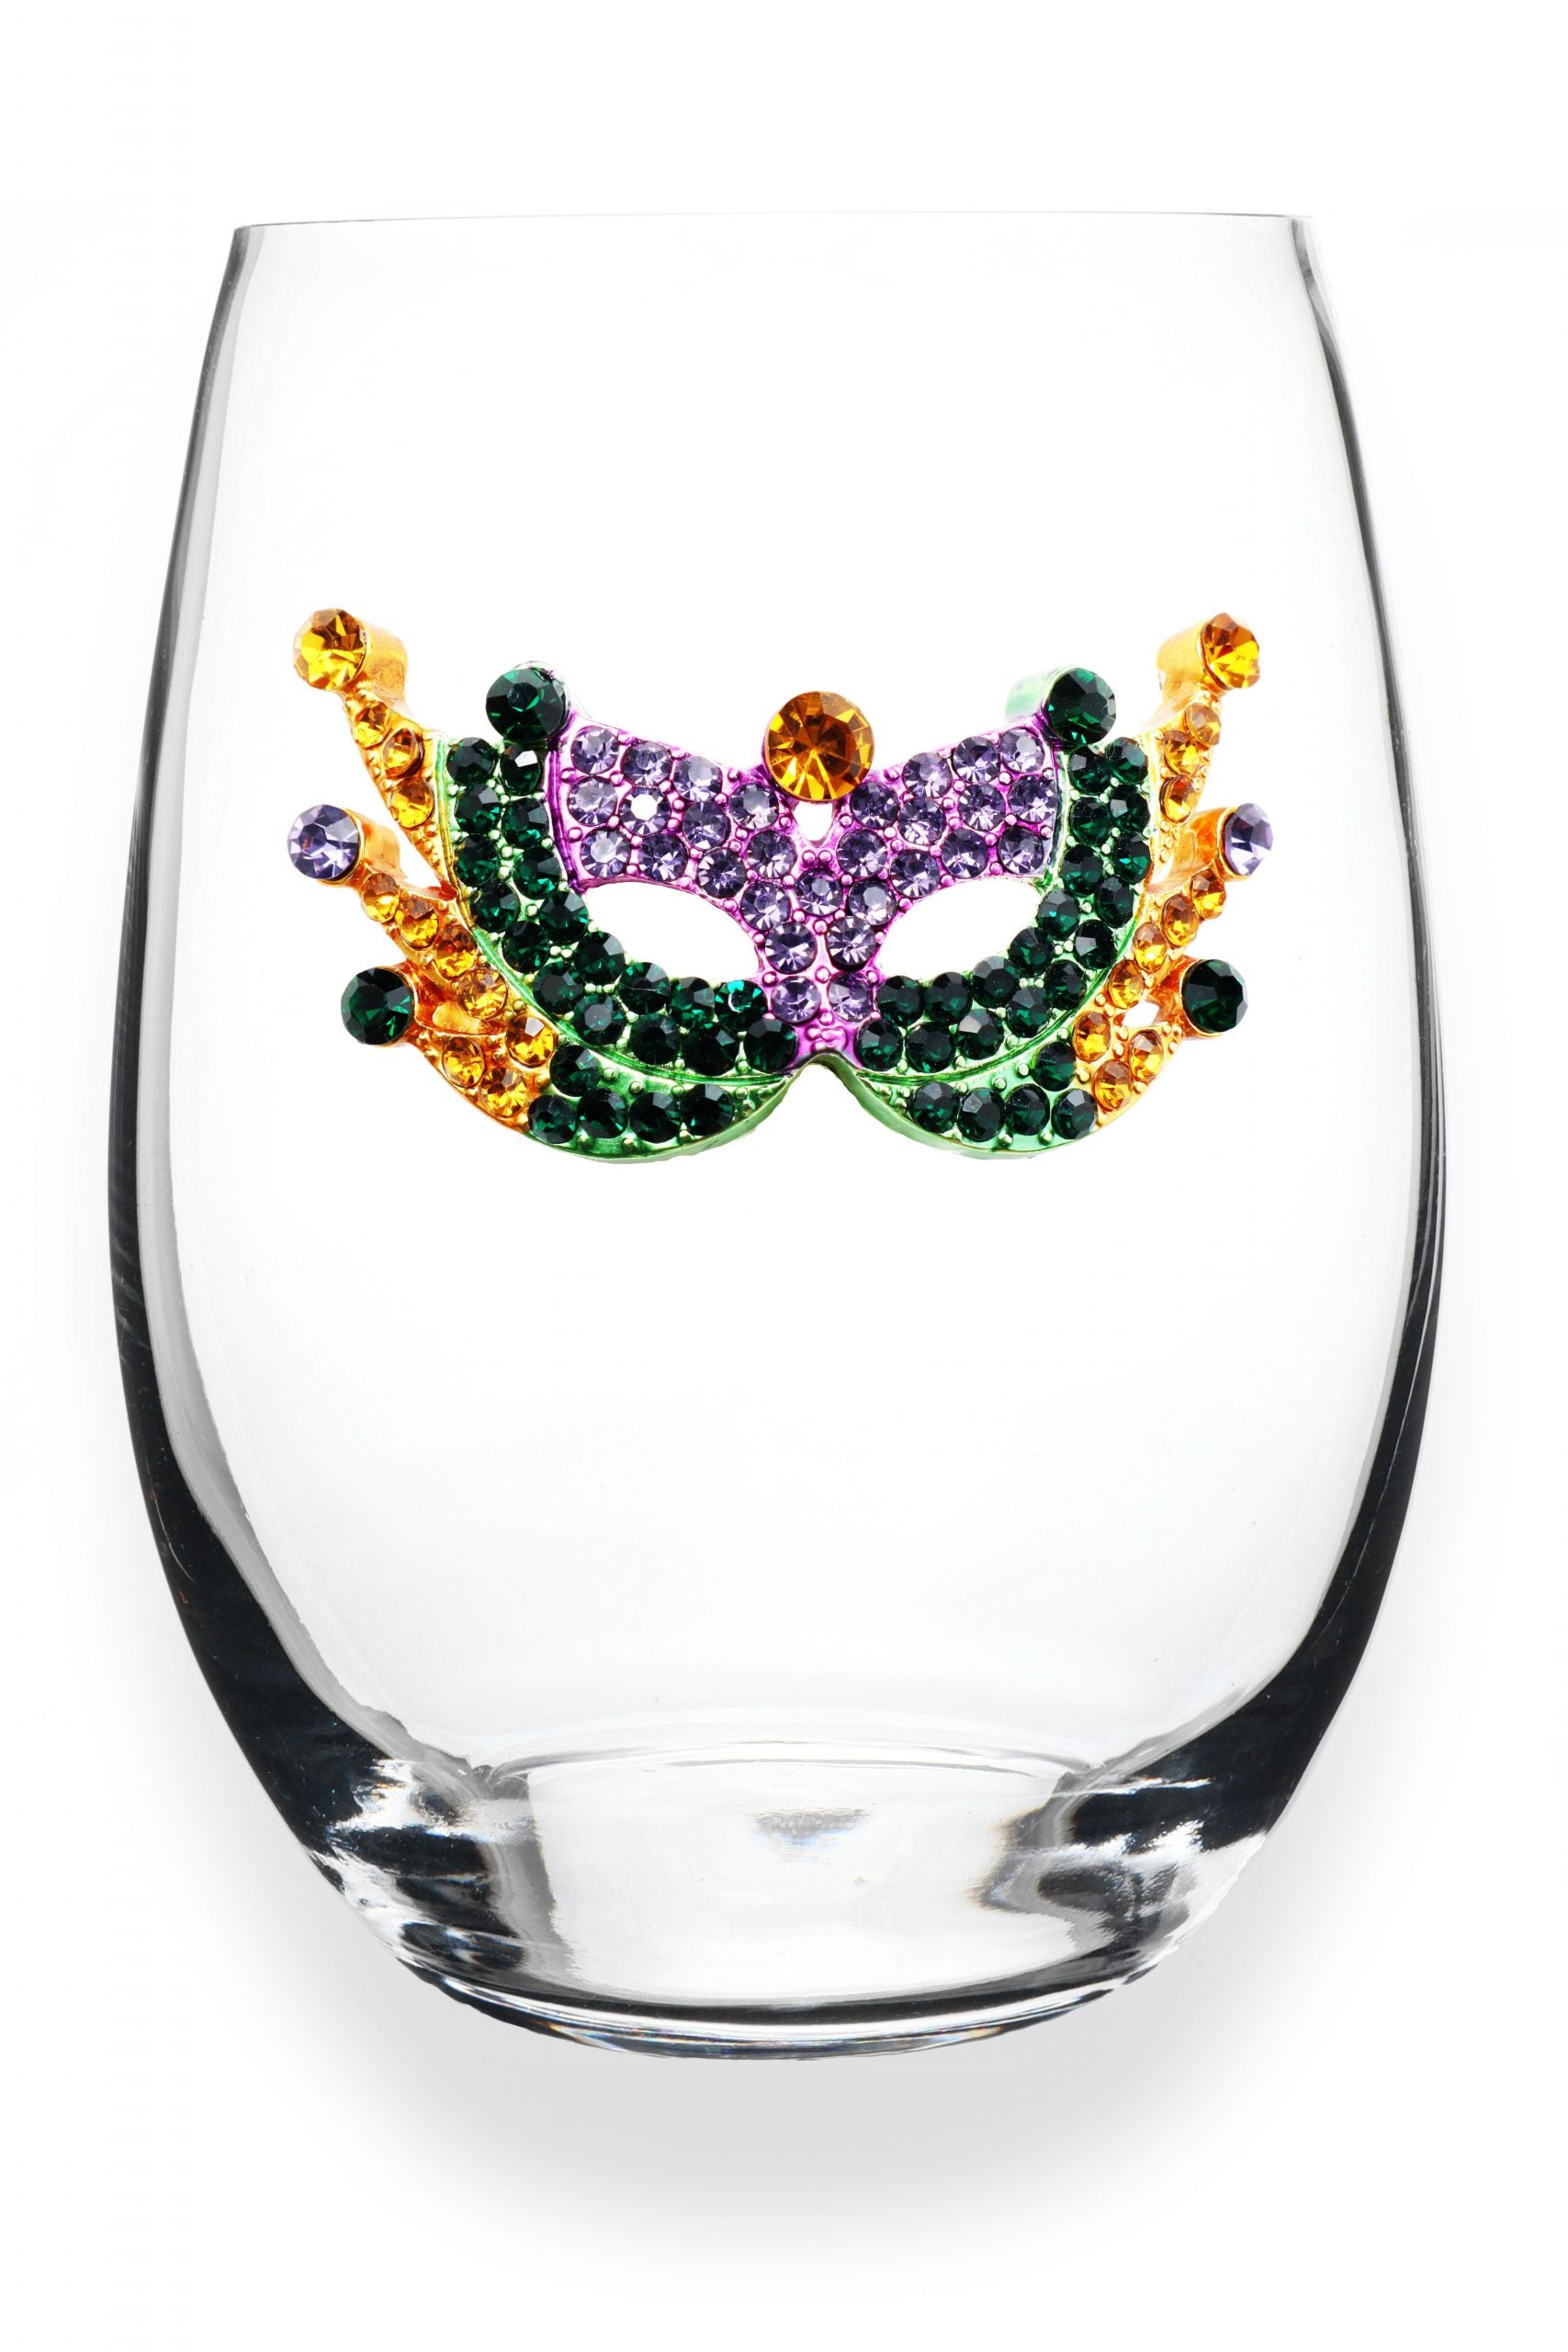 Mardi Gras Mask Jeweled Wine Glass